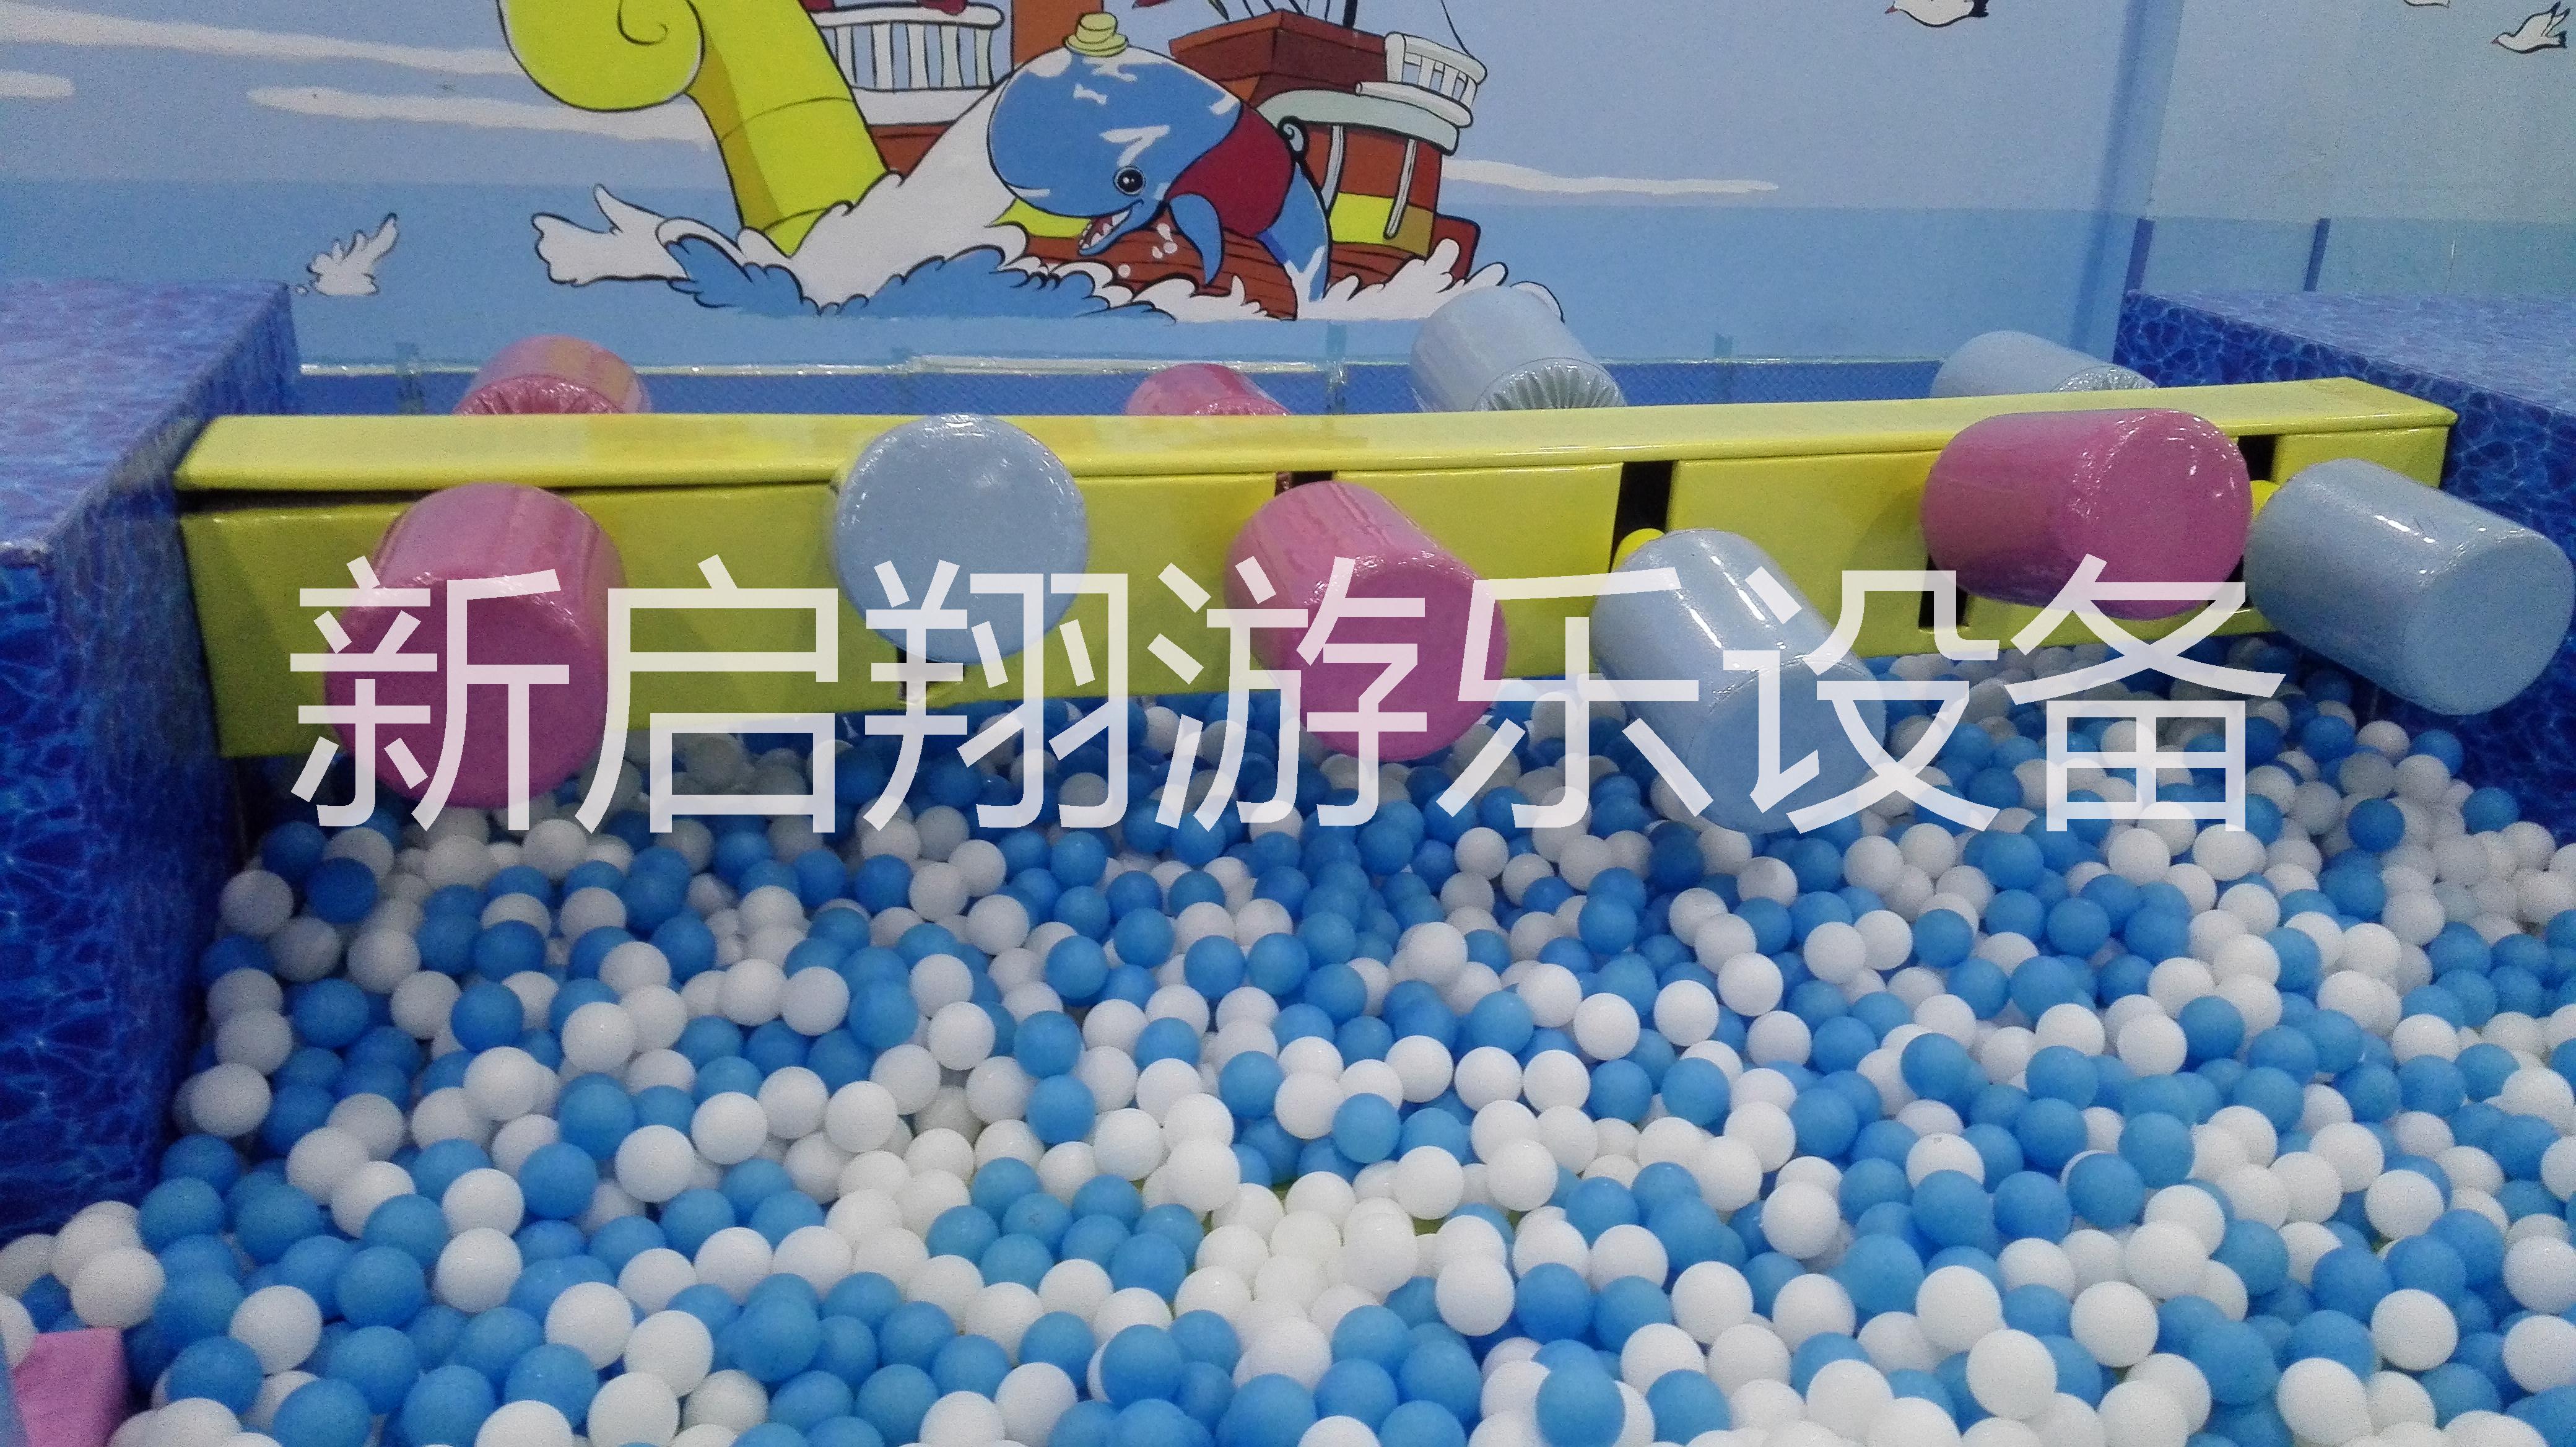 郑州市室内游乐设备厂家  儿童淘气堡厂家